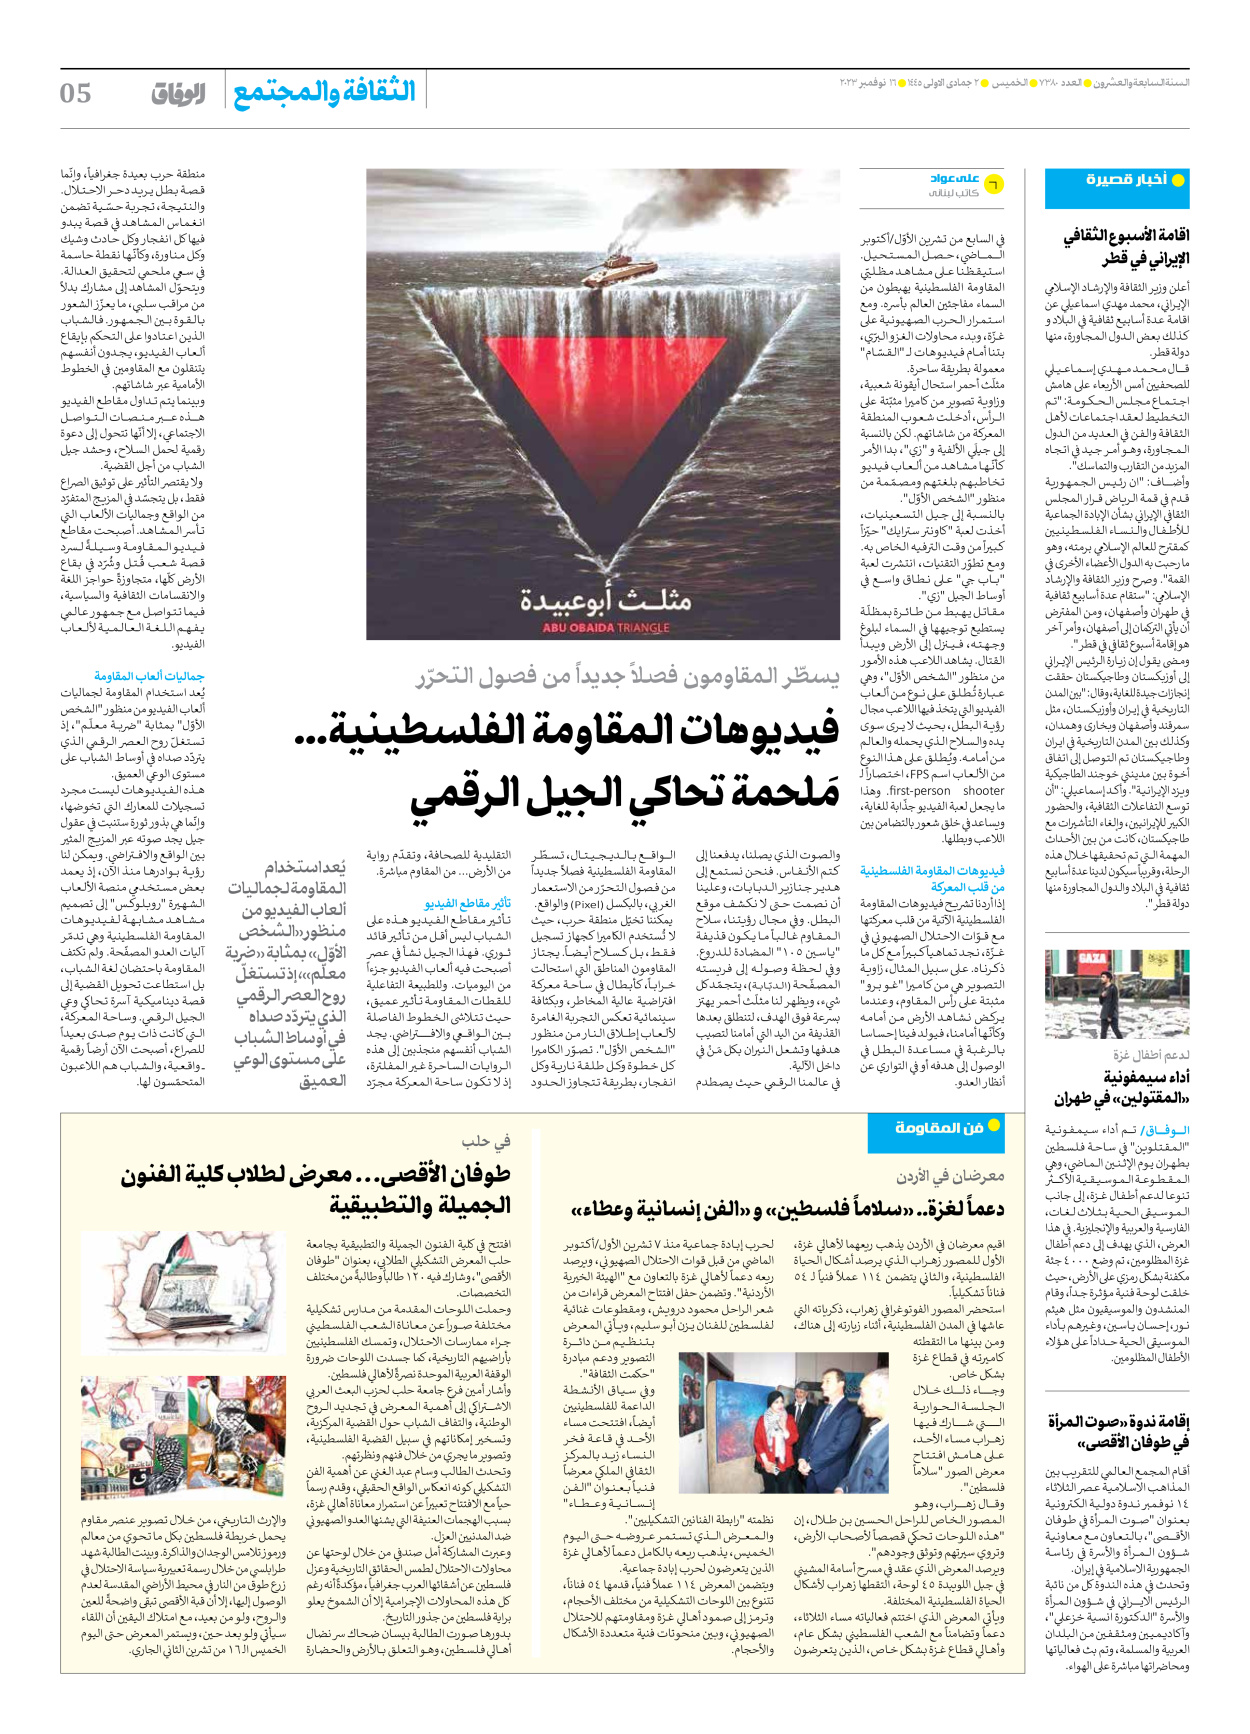 صحیفة ایران الدولیة الوفاق - العدد سبعة آلاف وثلاثمائة وثمانون - ١٦ نوفمبر ٢٠٢٣ - الصفحة ٥